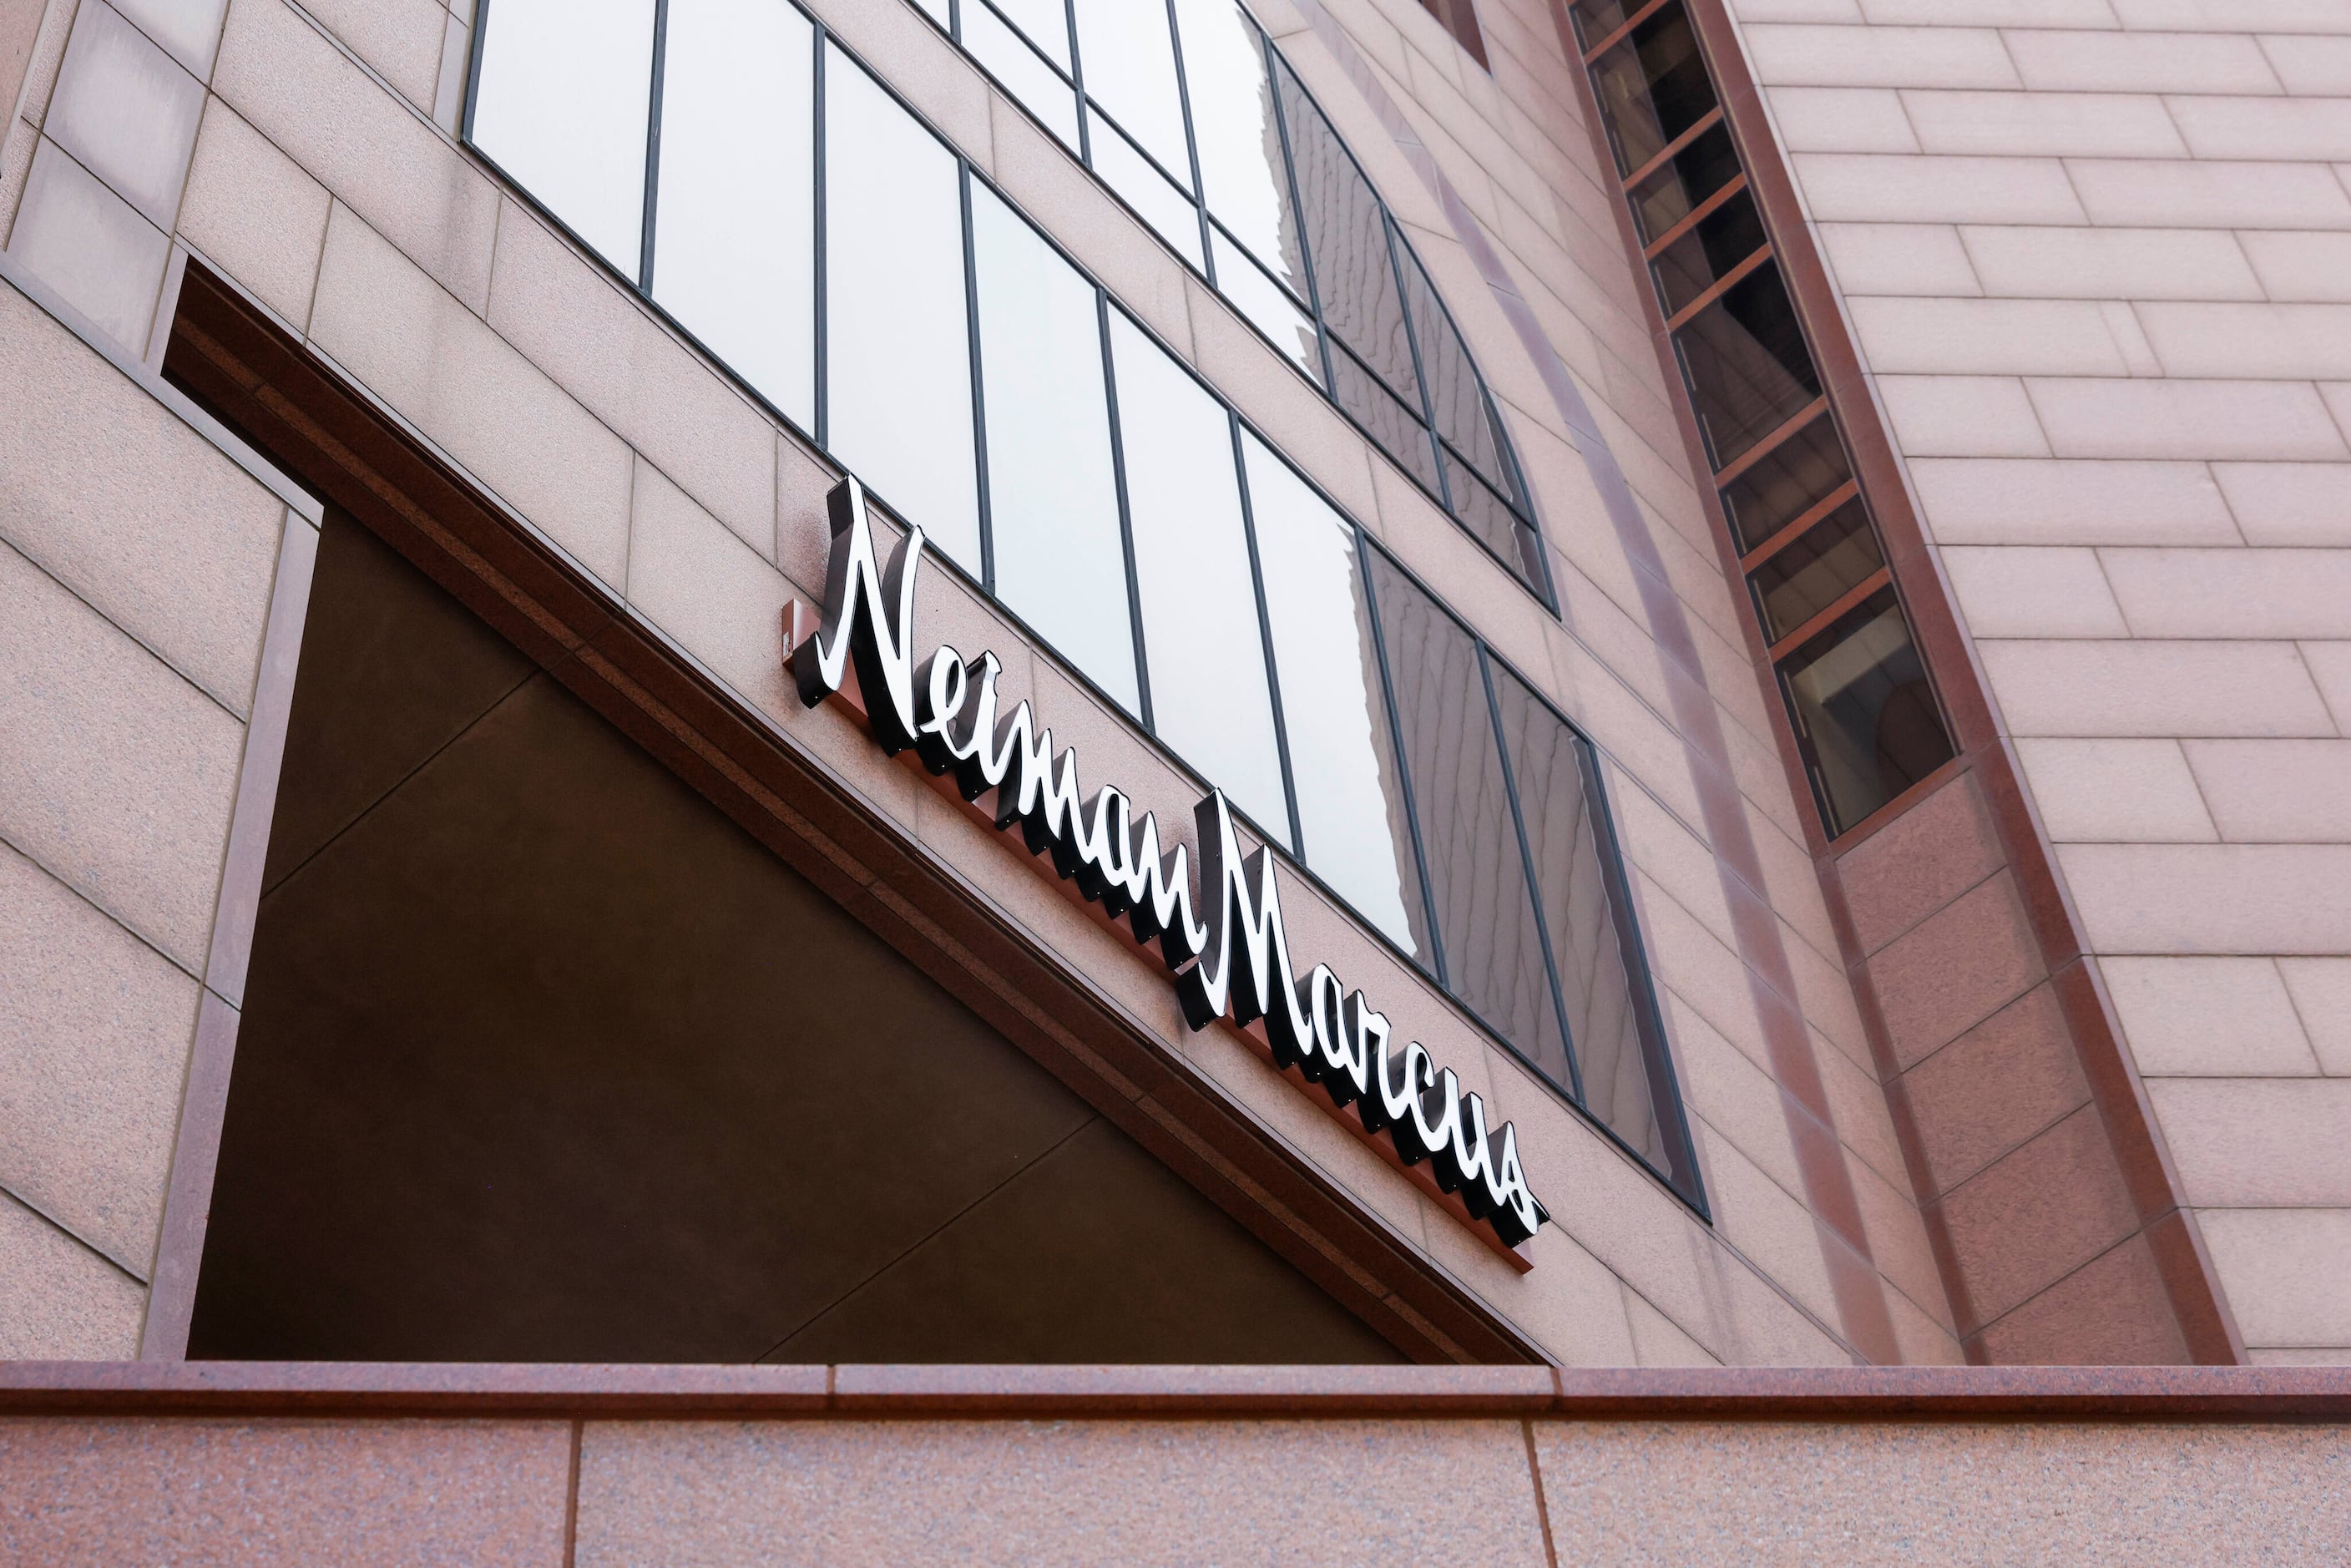 After weeks of rumors, Dallas-based Neiman Marcus declares